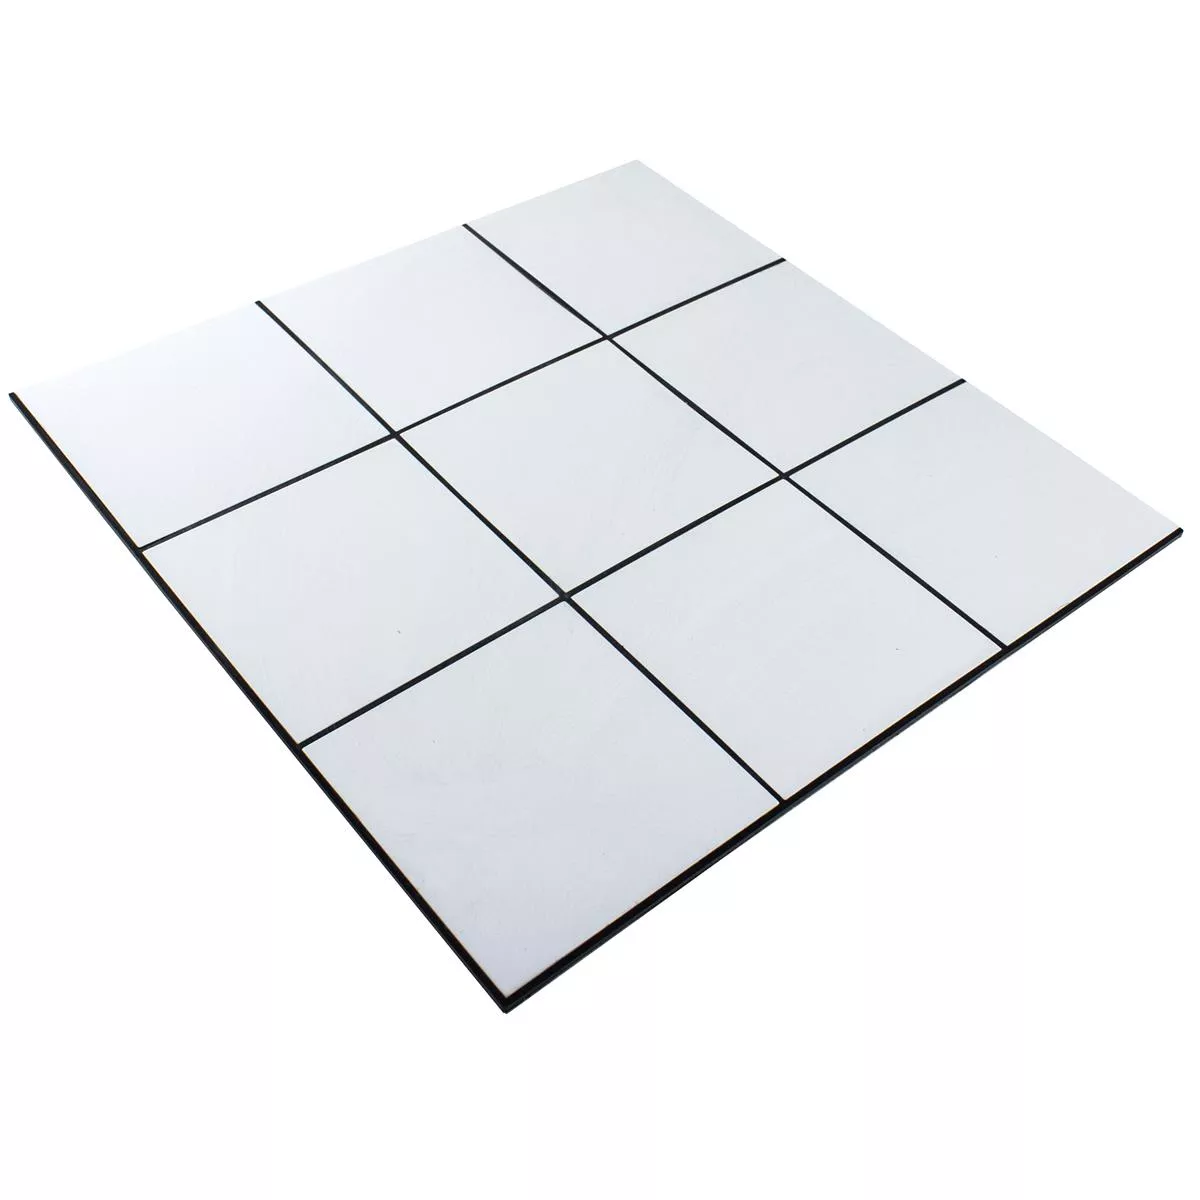 Alluminio Mosaico Lenora Autoadesivo Bianco